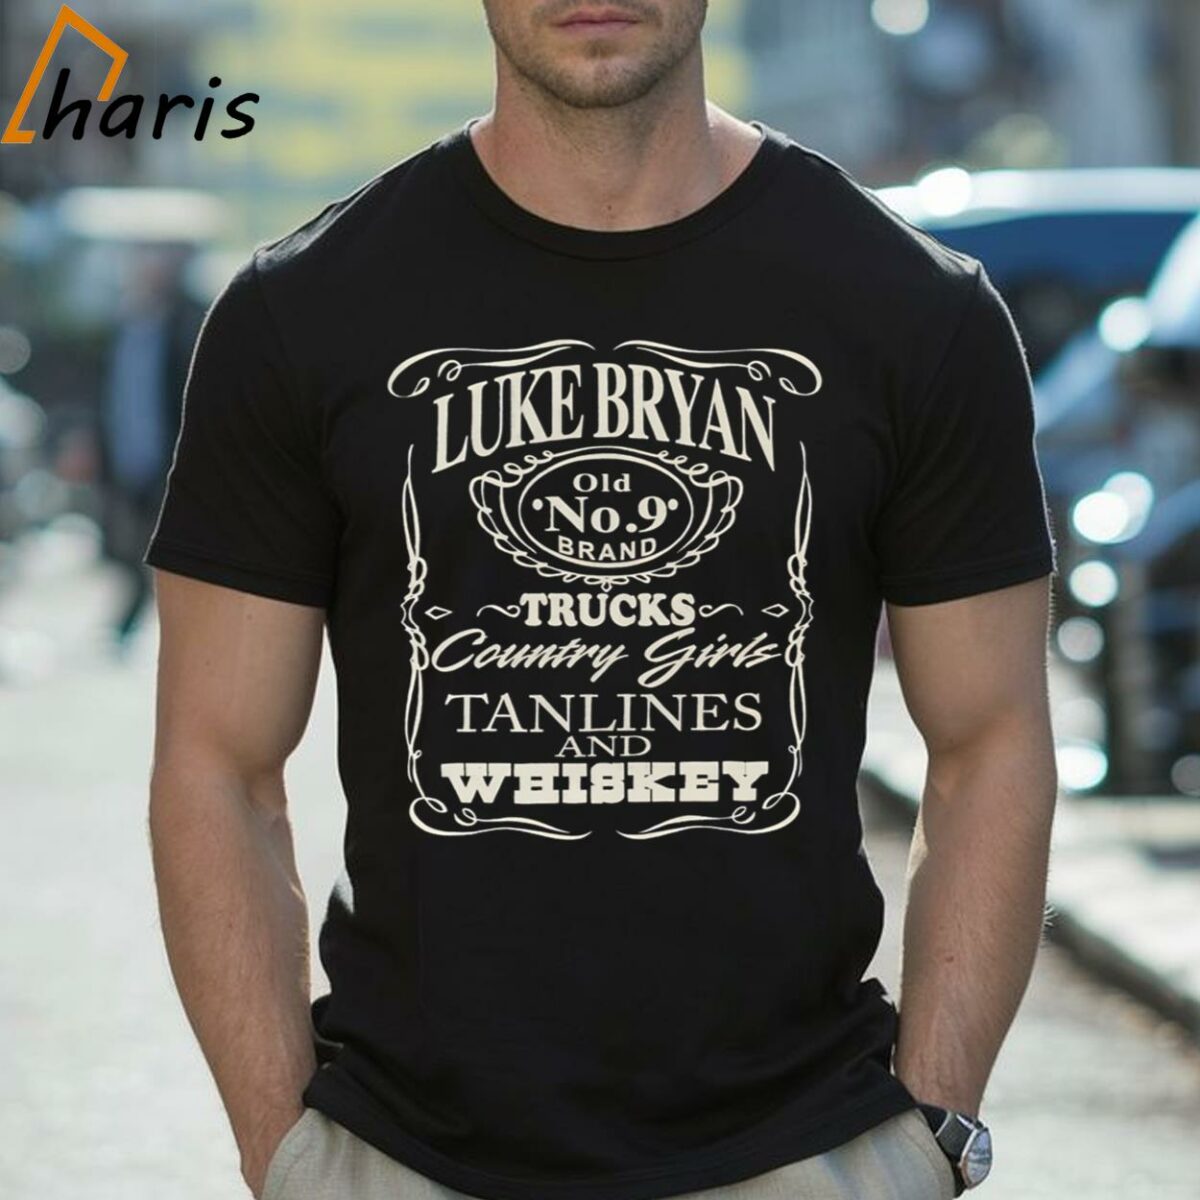 Luke Bryan Concert Shirt Black Kill Lights Tee Trucks Tanlines Whiskey 2 Shirt